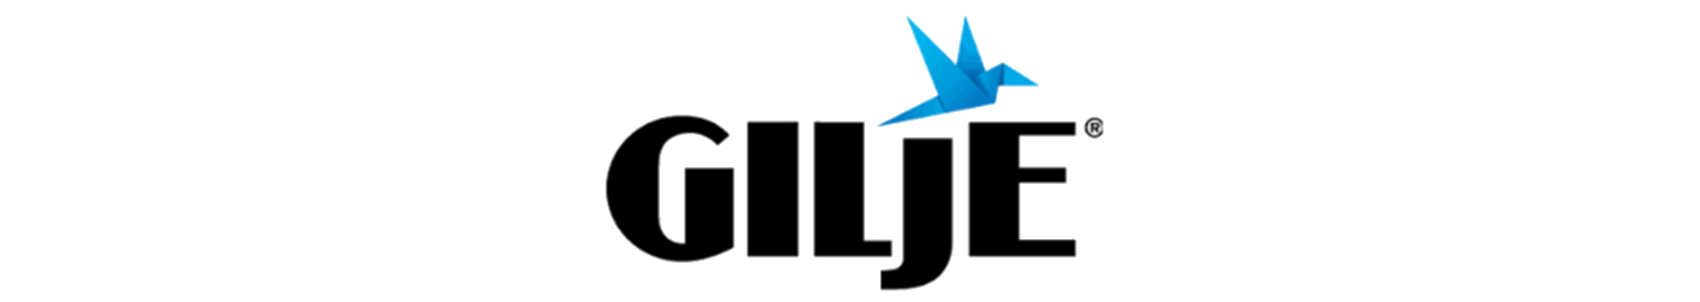 Gilje logo banner